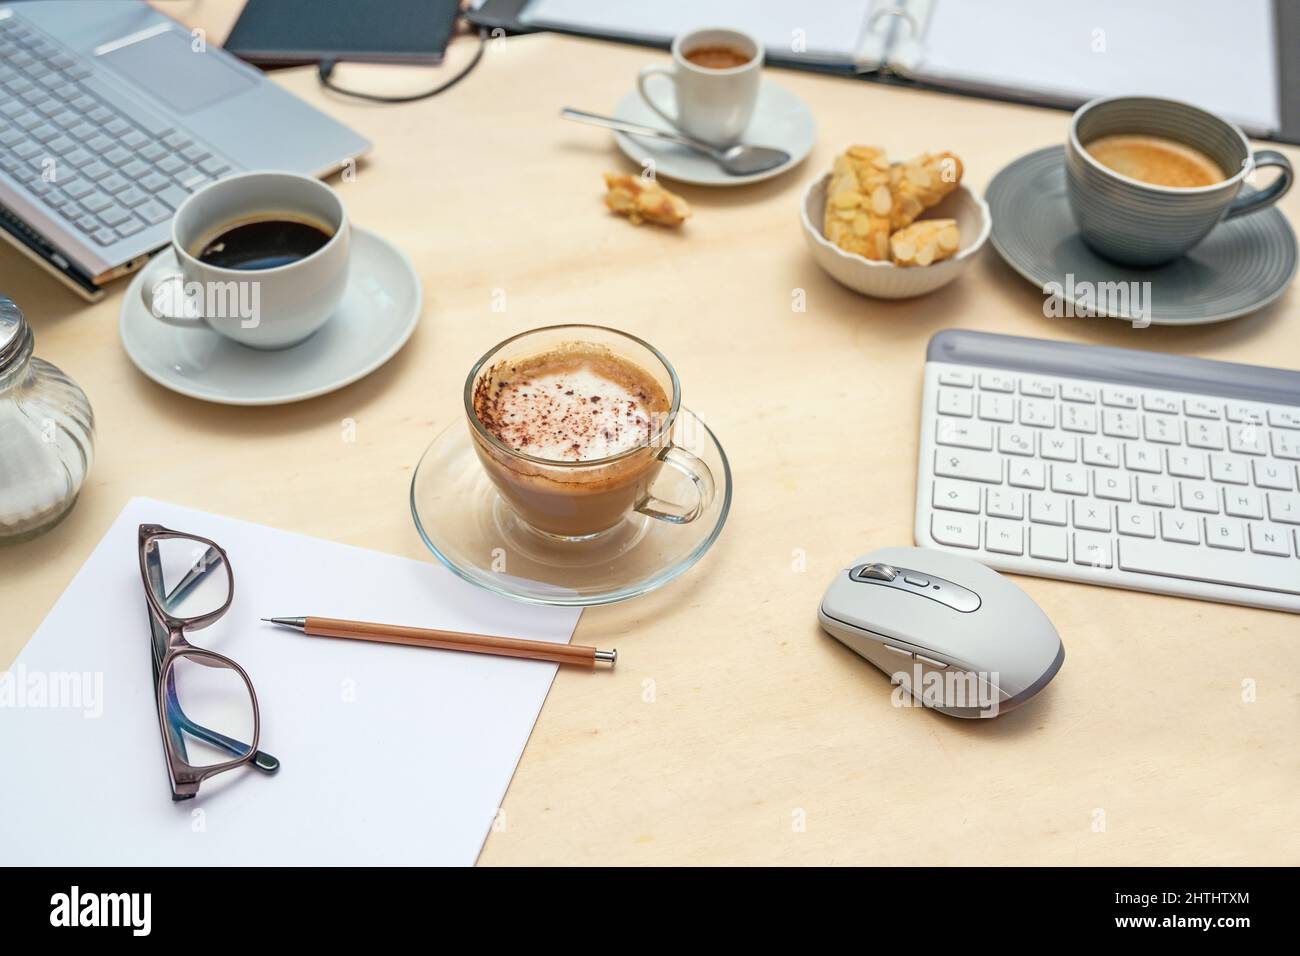 Tisch bei einem Meeting mit Laptop, Tastatur, Ordner und Papieren und verschiedenen Kaffeetassen, hellem Holz, niemand, ausgewählter Fokus, enge Schärfentiefe Stockfoto